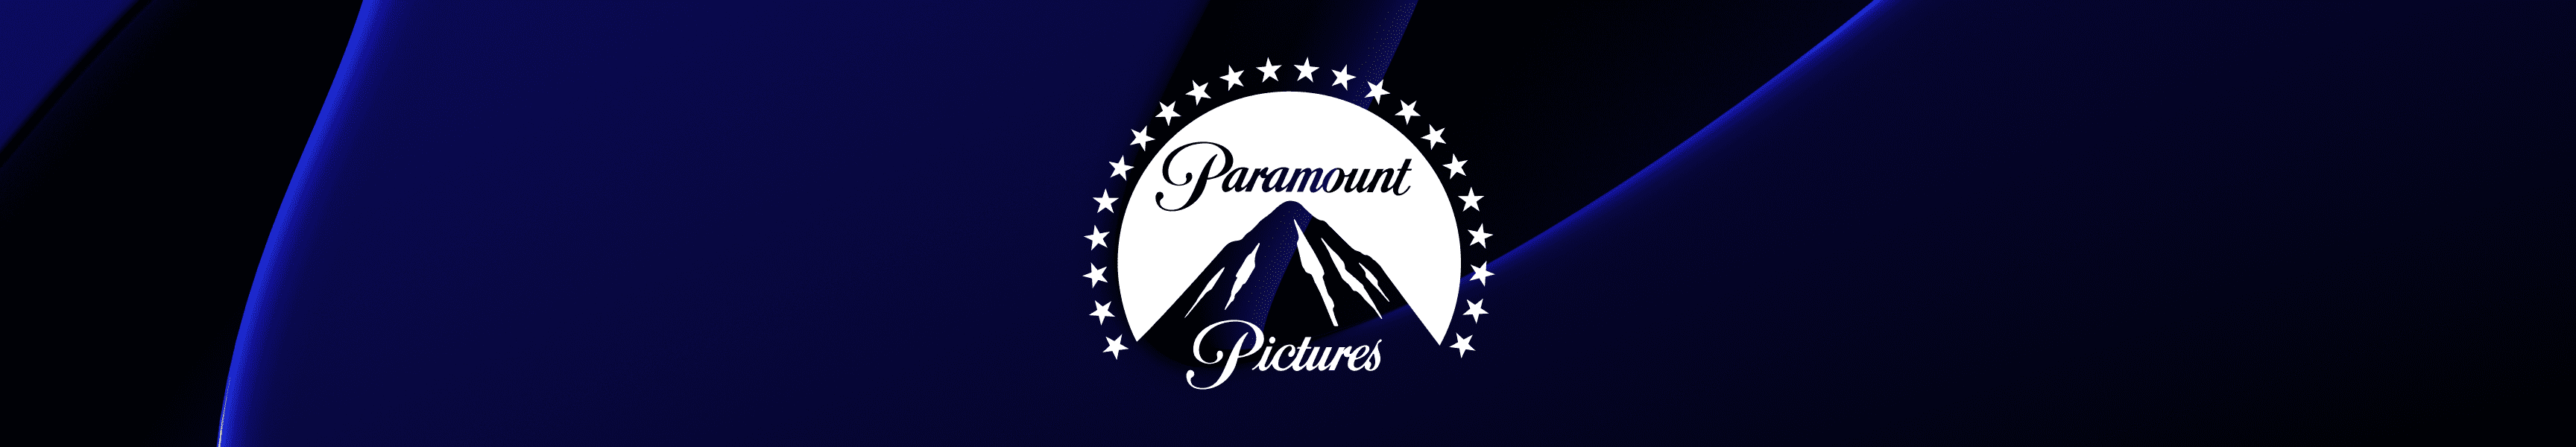 Paramount Pictures Accessoires de bar